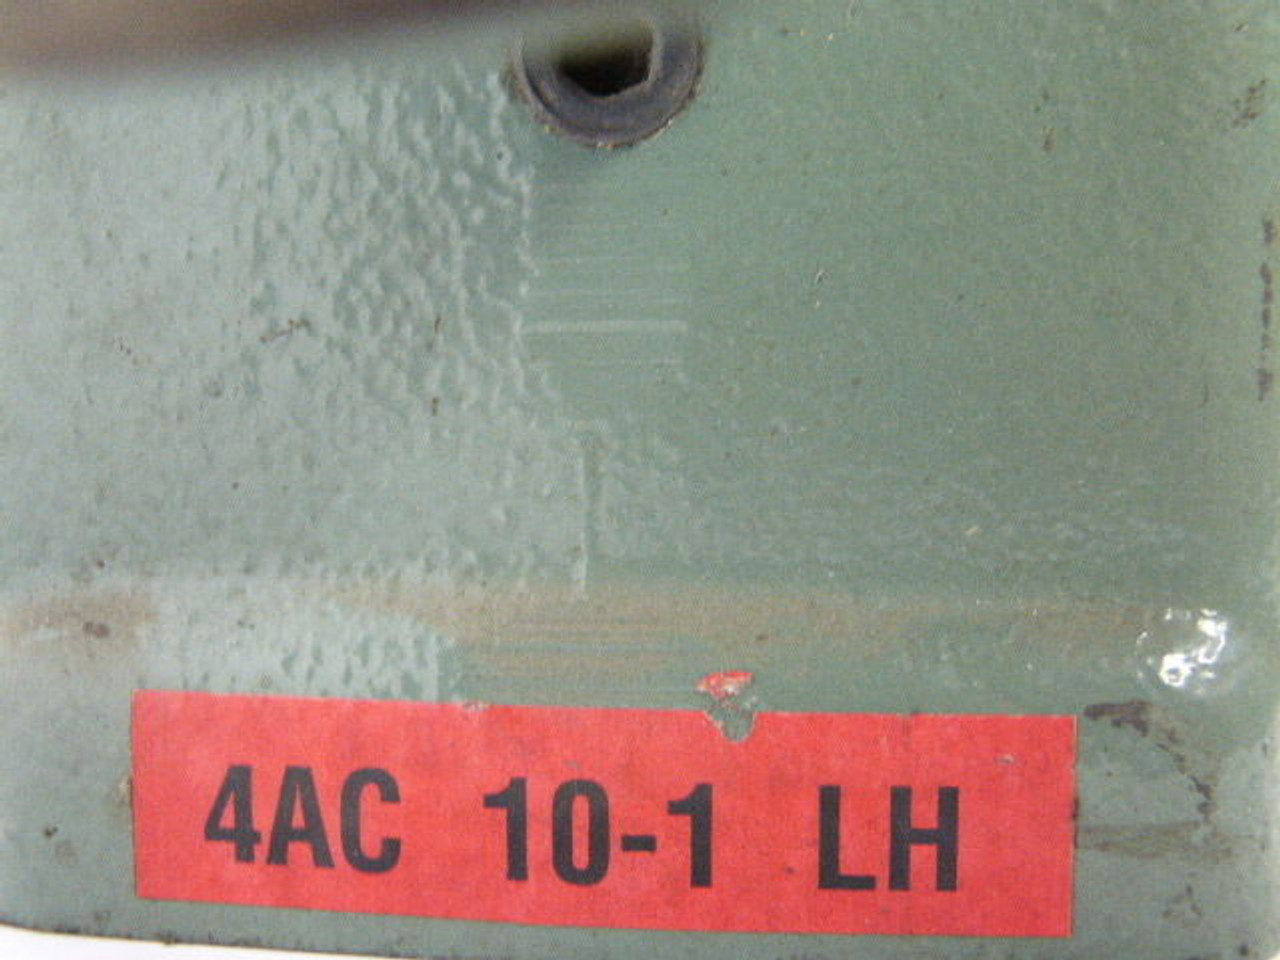 Hytrol 4AC-10-1-LH Left Hand Gear Reducer 10:1 Ratio USED